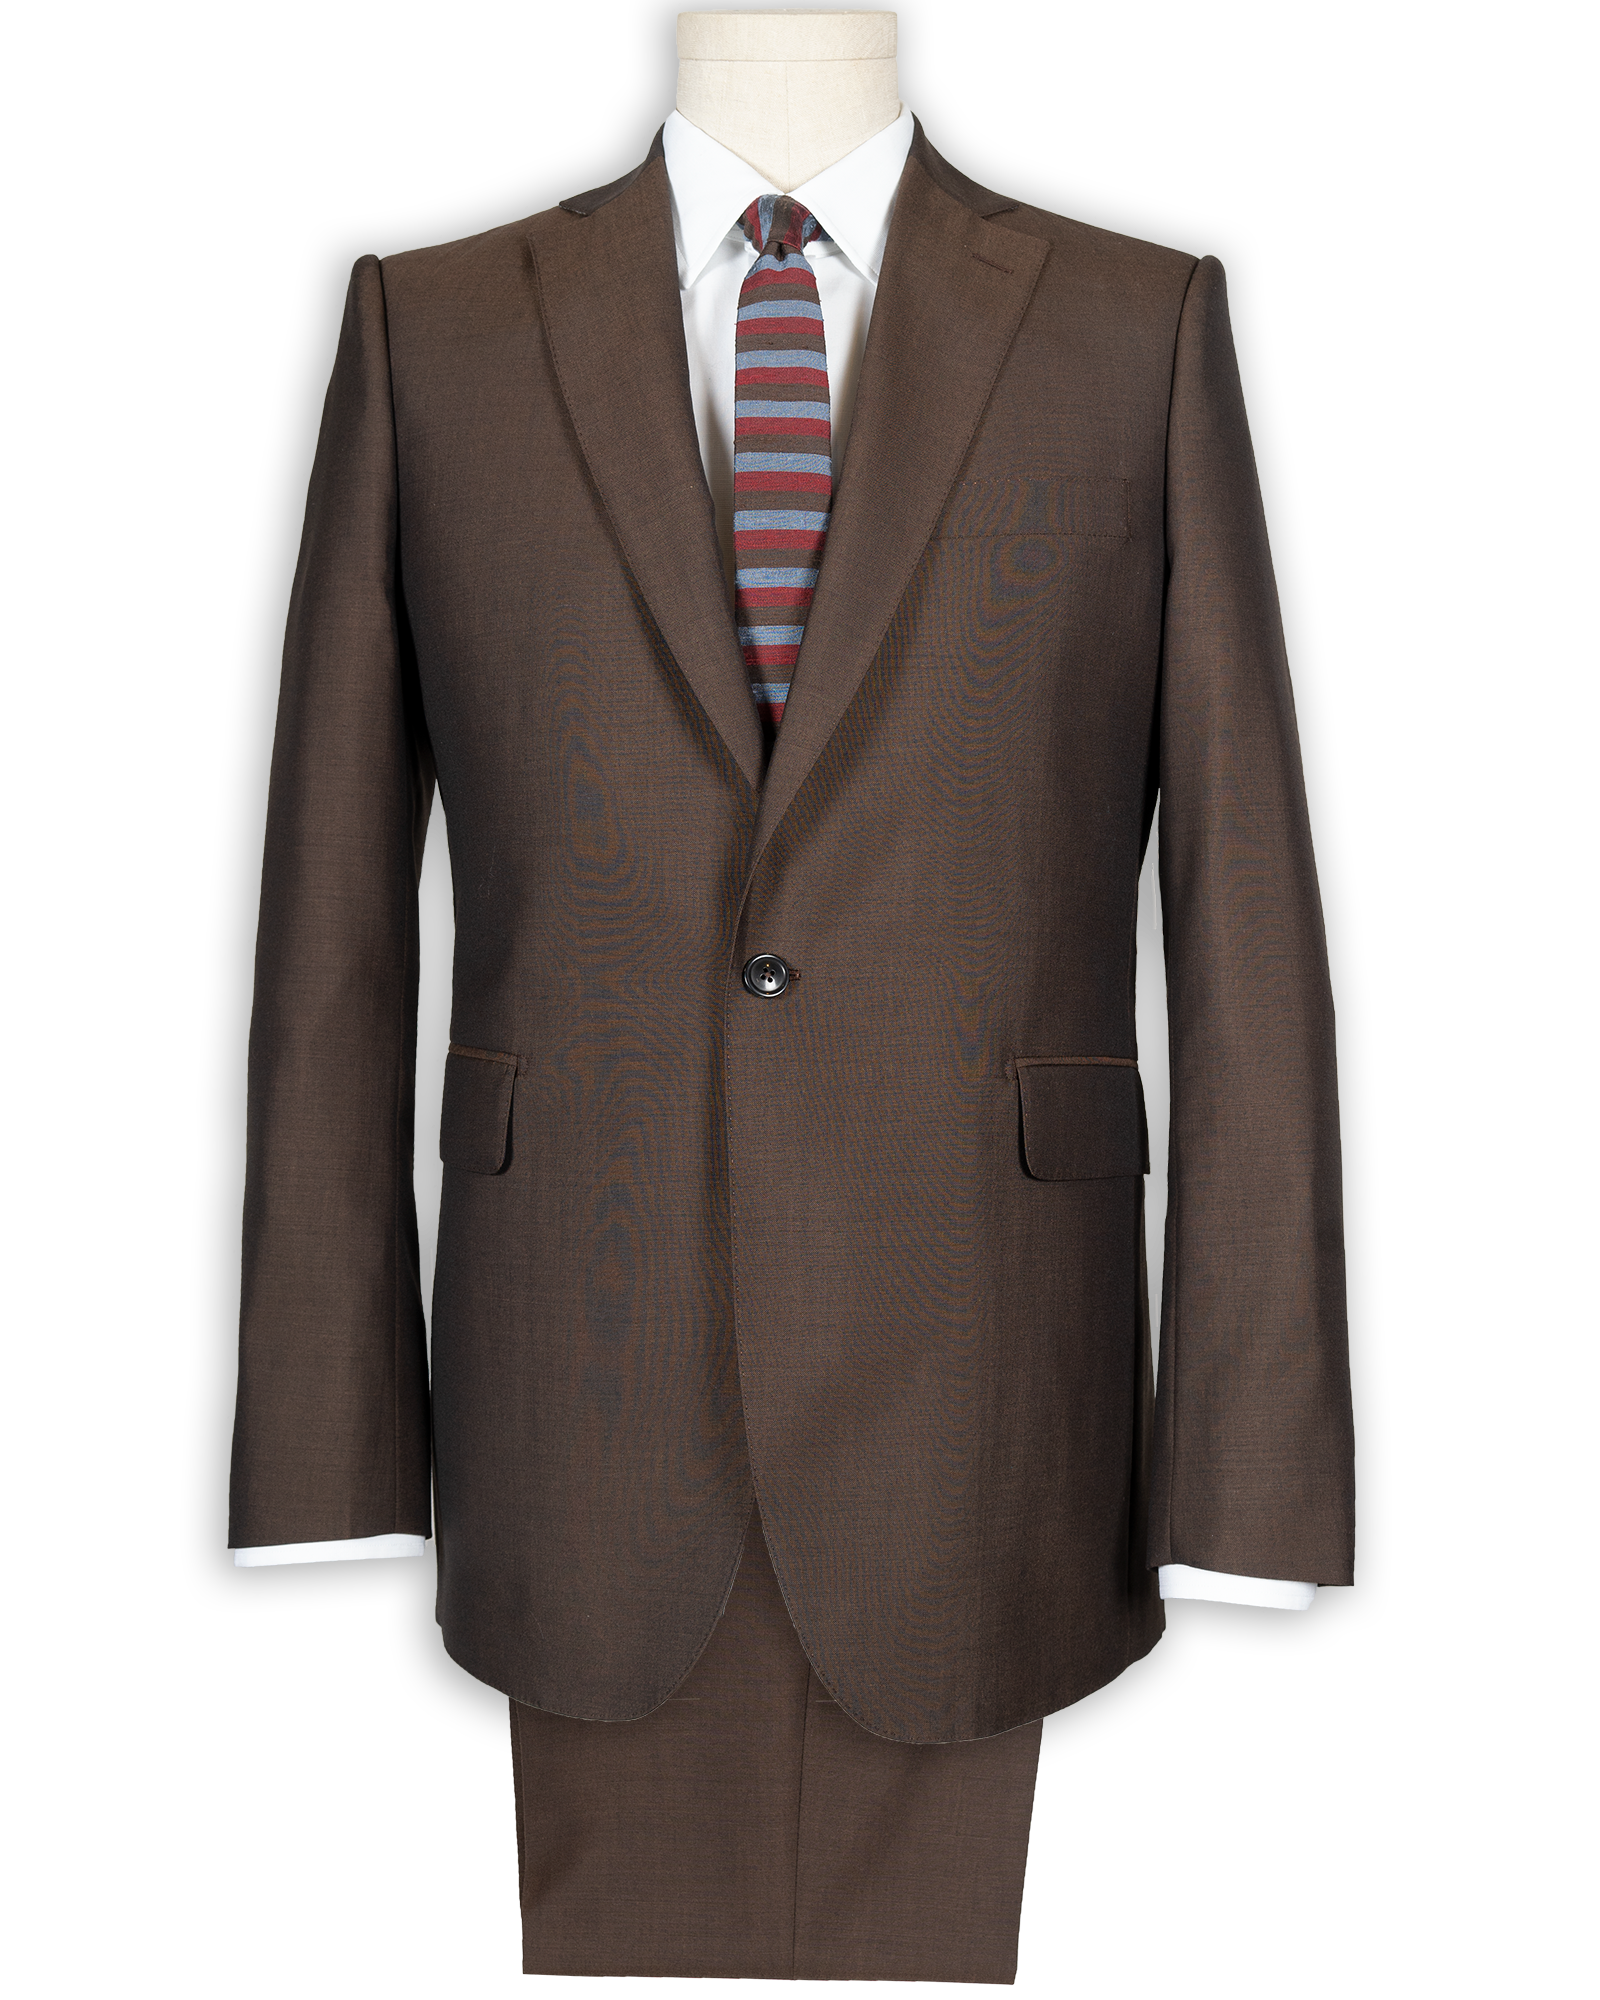 Model 60 Copper Suit